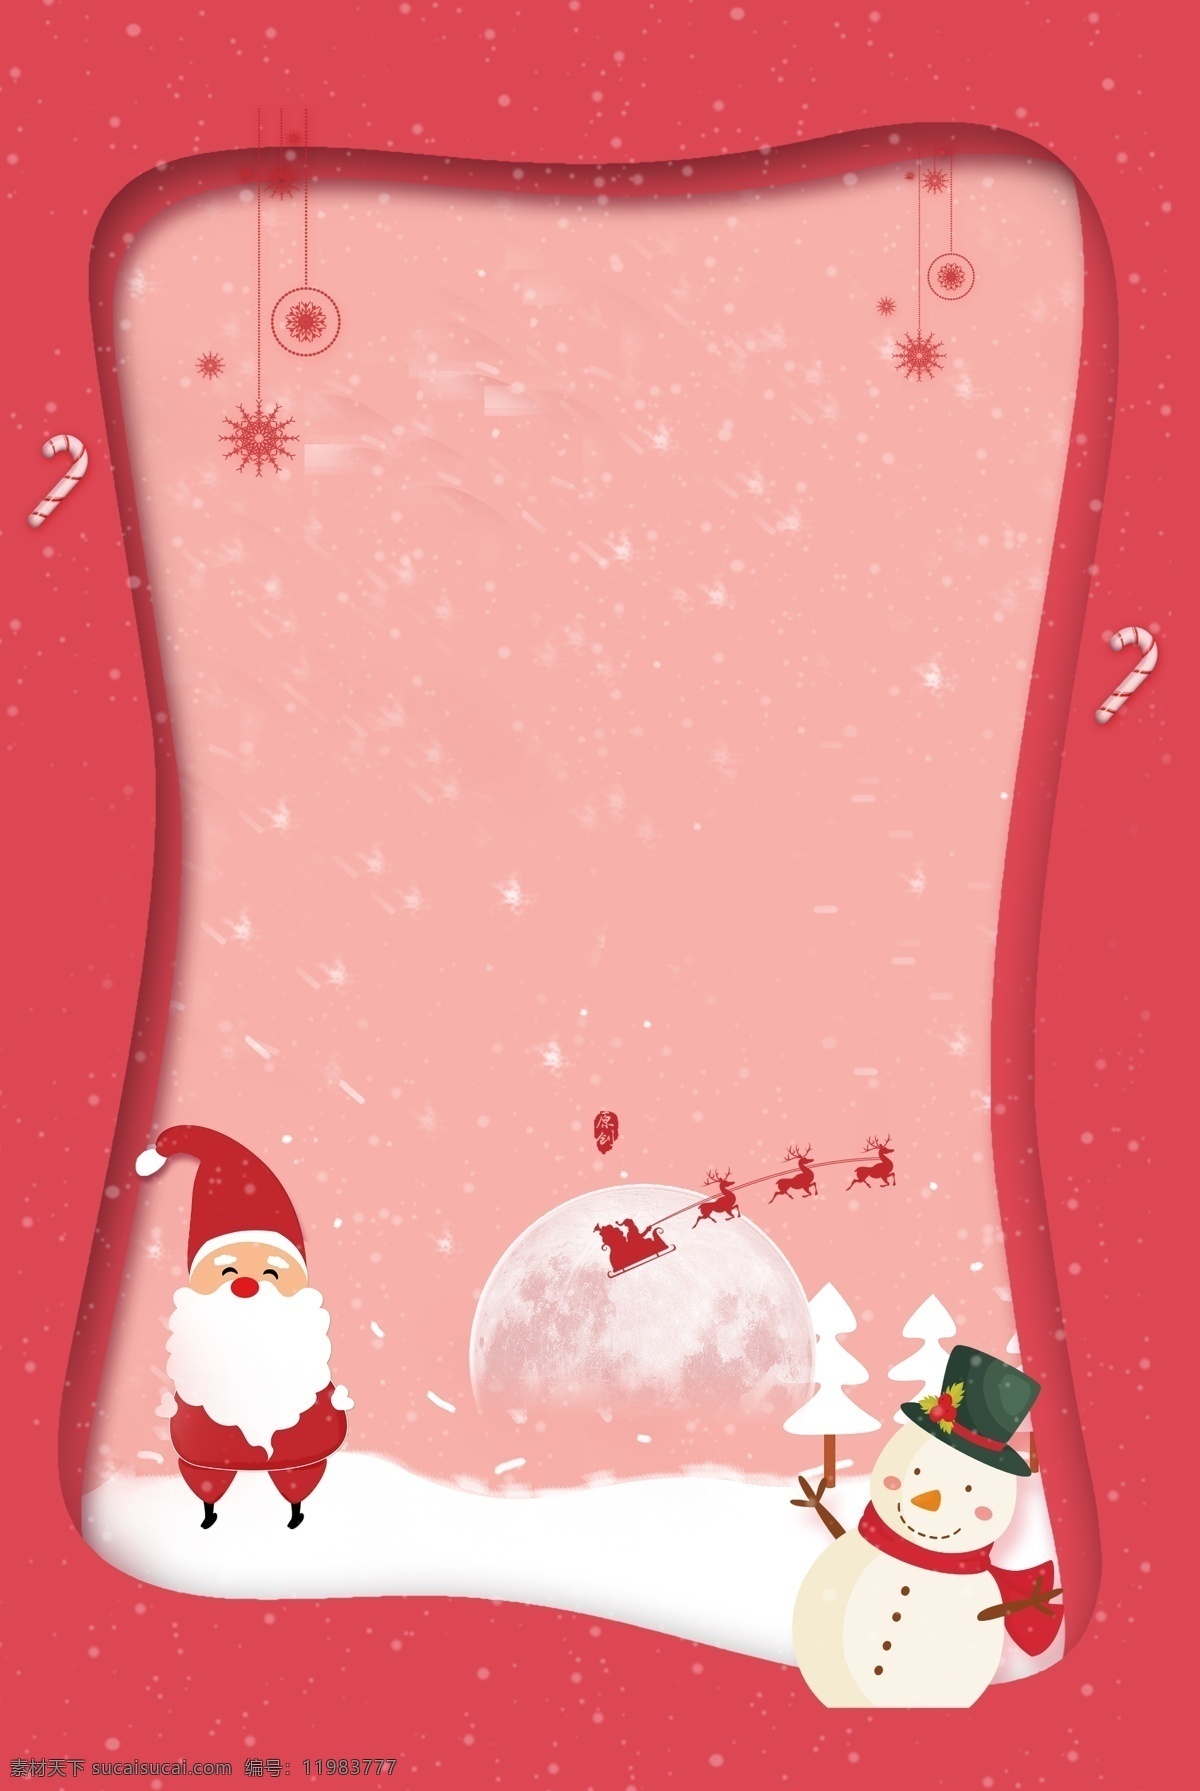 创意 简约 圣诞 主题 背景 圣诞老人 圣诞背景 圣诞快乐 圣诞海报 雪人 圣诞活动 圣诞背景模板 背景设计